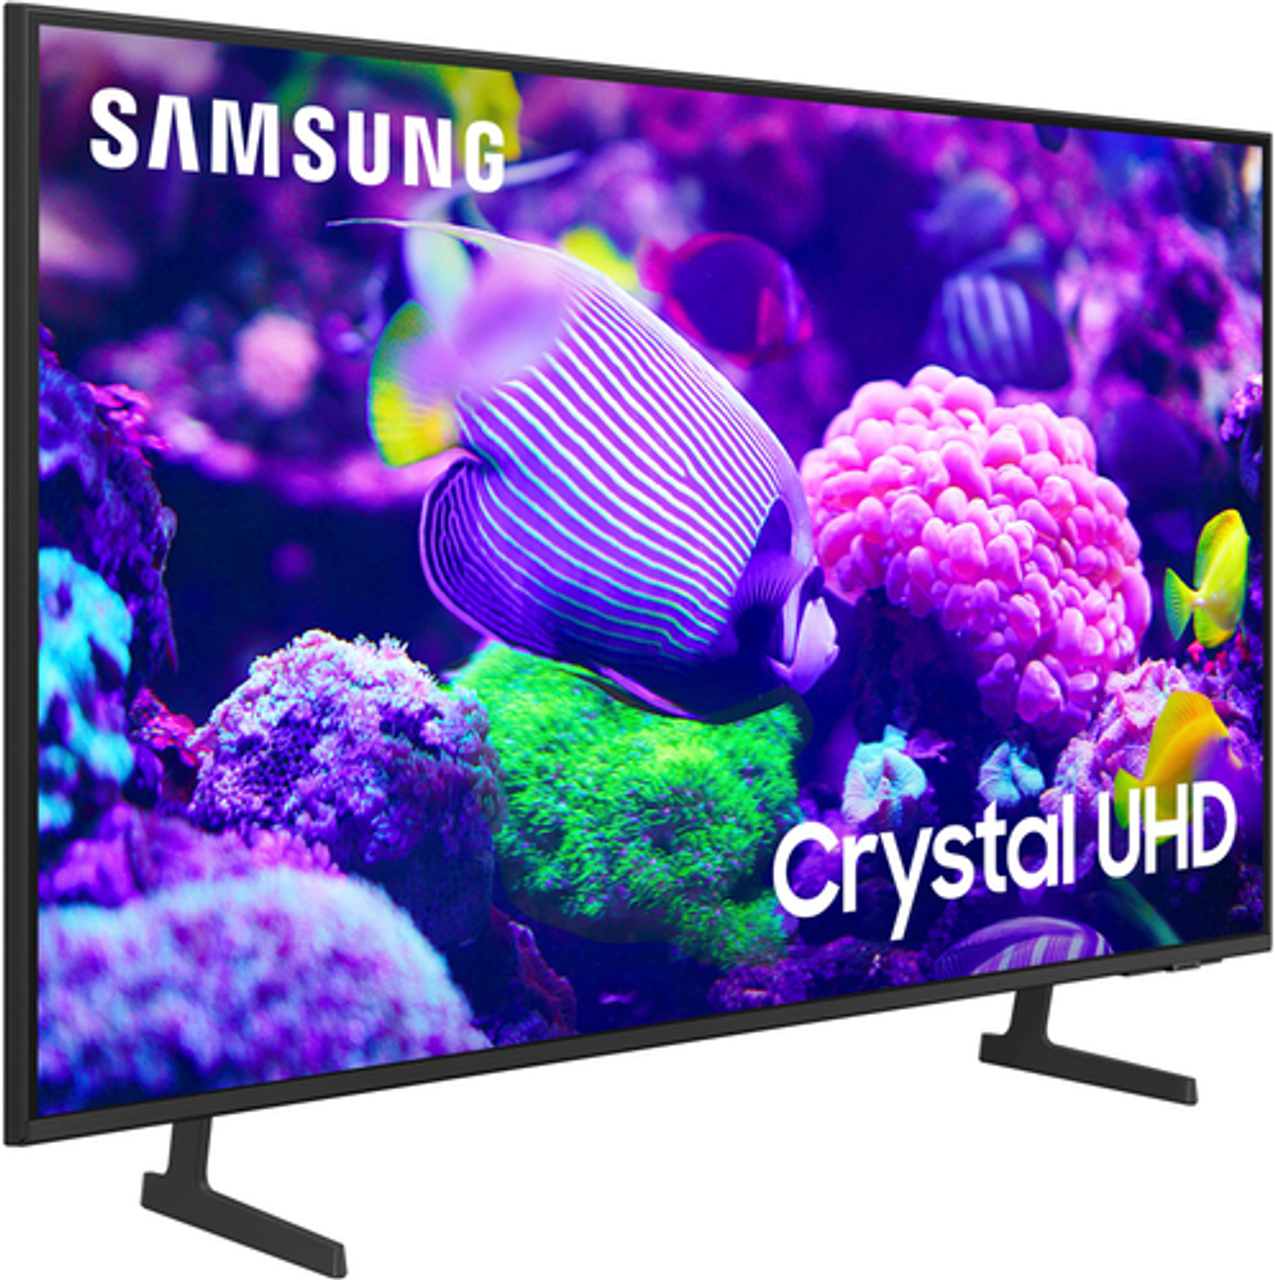 Samsung - 65” Class DU7200 Series Crystal UHD 4K Smart Tizen TV